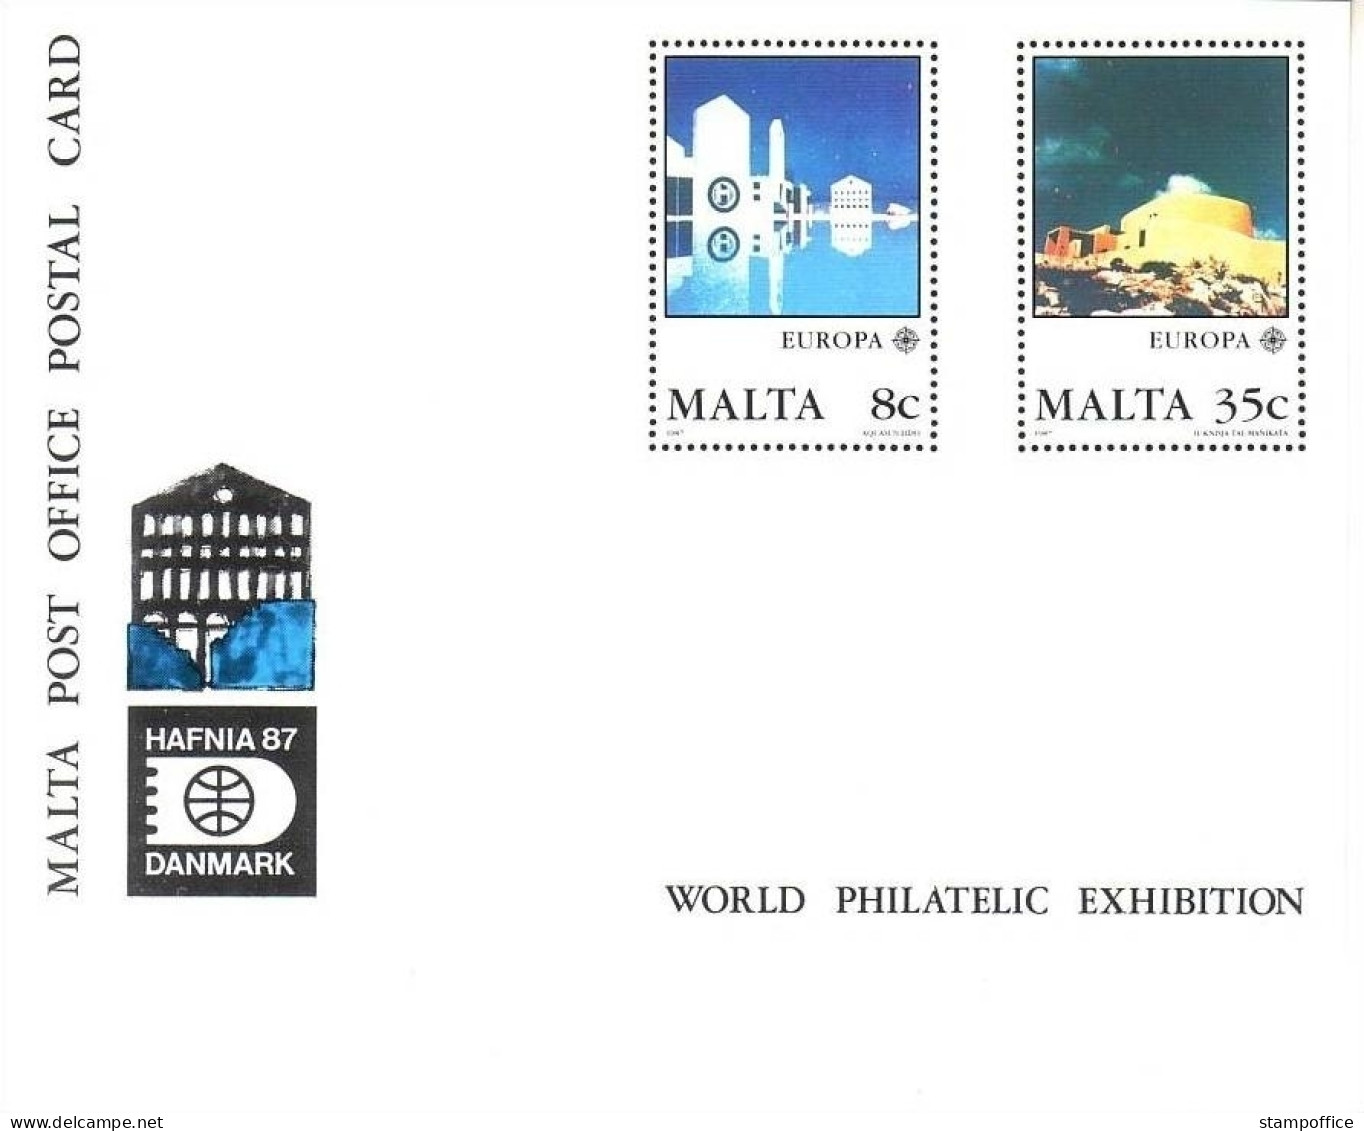 MALTA MI-NR. 766-767 POSTFRISCH(MINT) Sonderpostkarte P 26 HAFNIA 1987 MODERNE ARCHITEKTUR - 1987